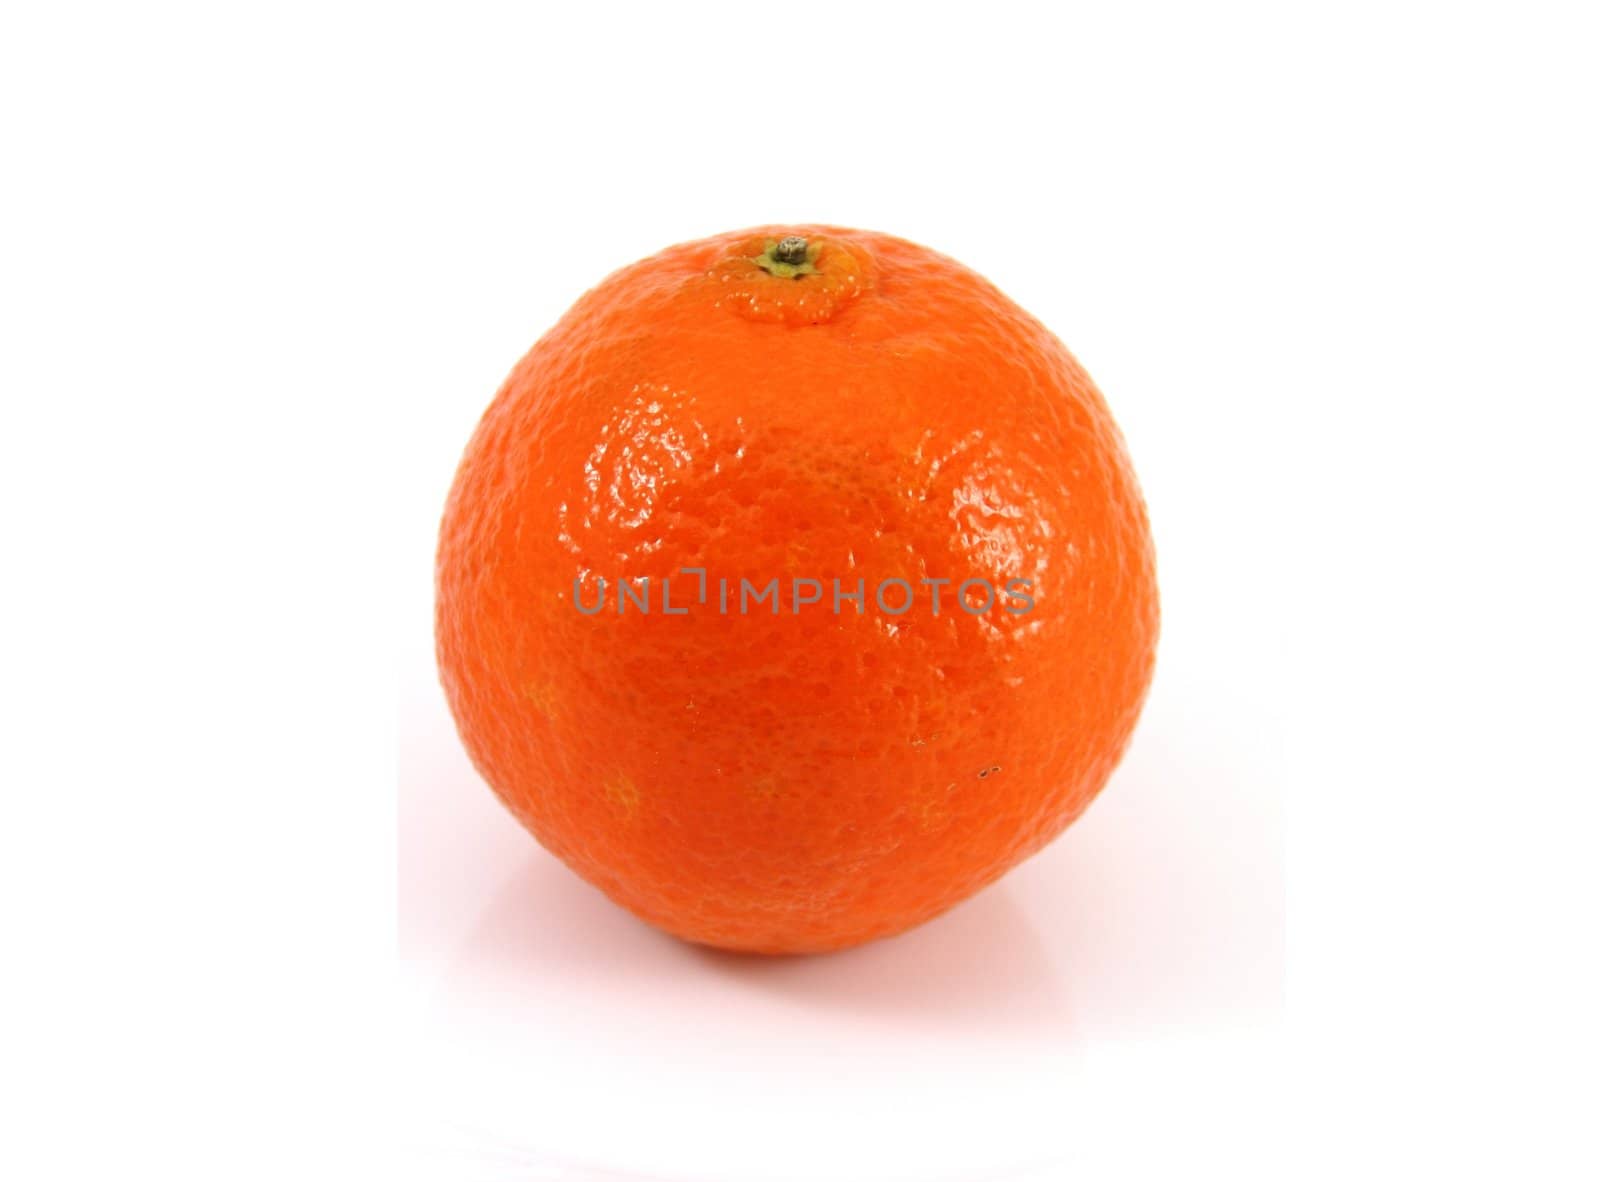 Ripe Orange by jasony00